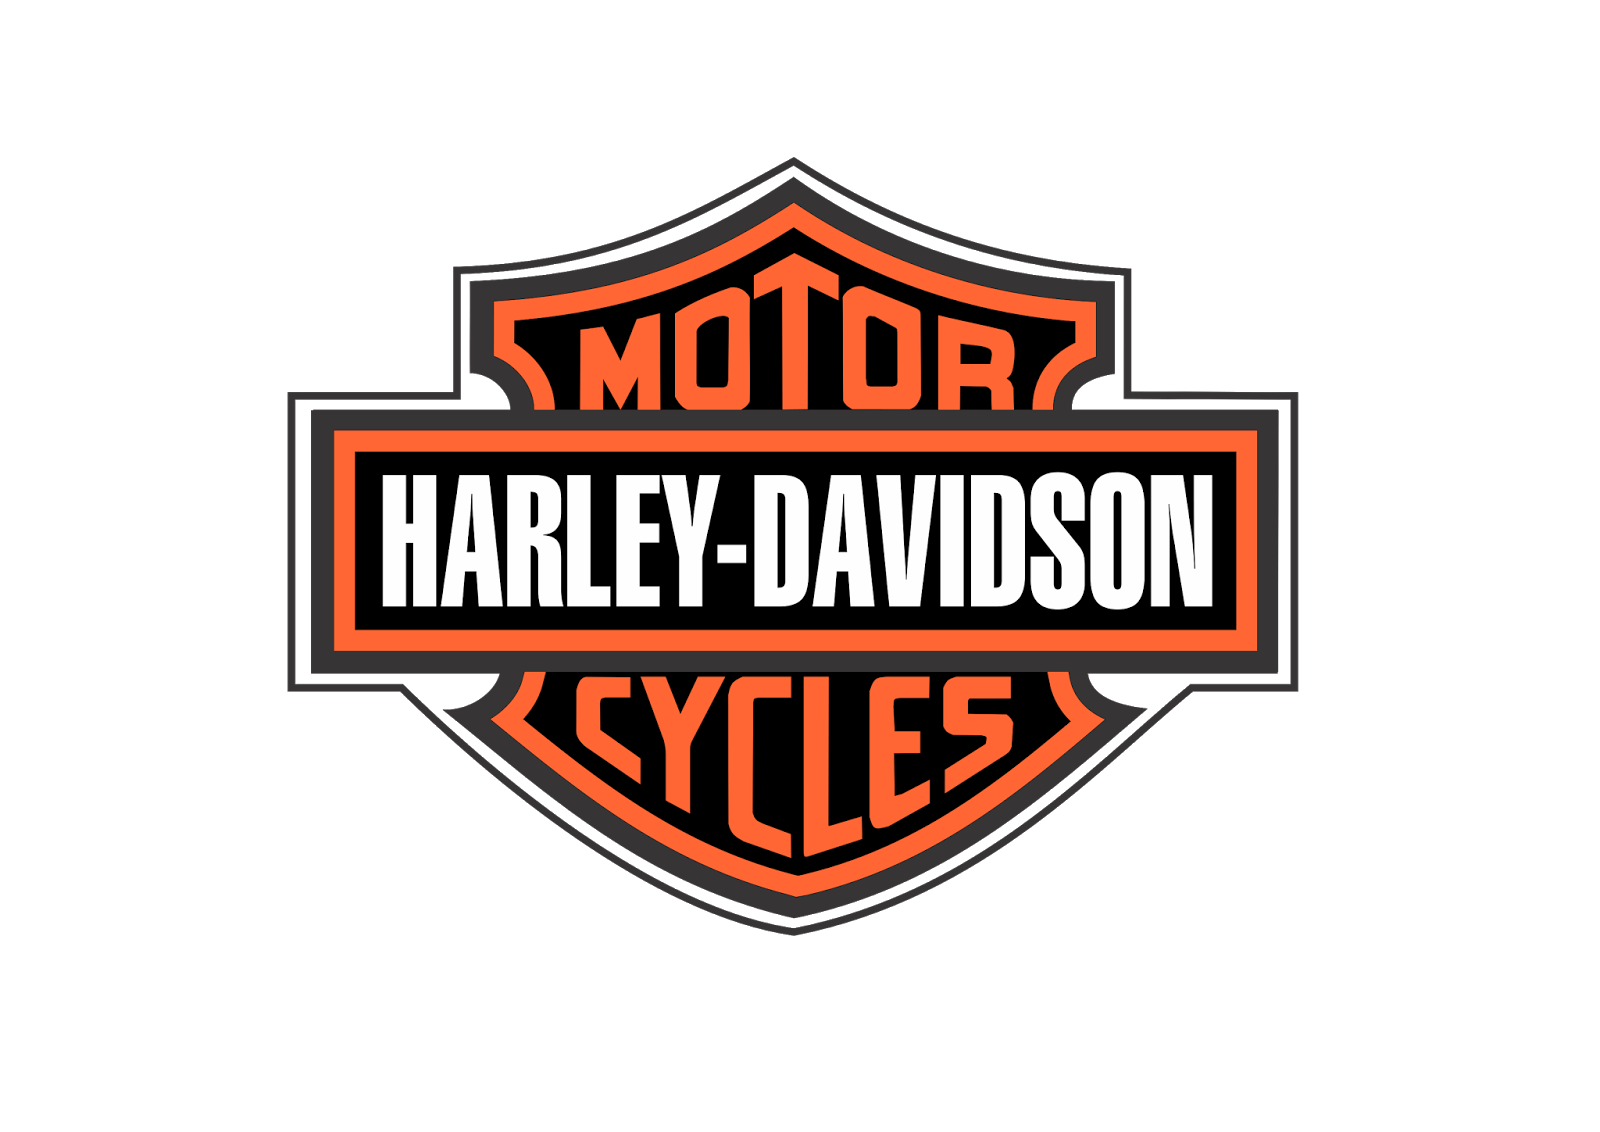 Harley Davidson Football Logo - Harley Davidson Logo PNG Image - PurePNG | Free transparent CC0 PNG ...